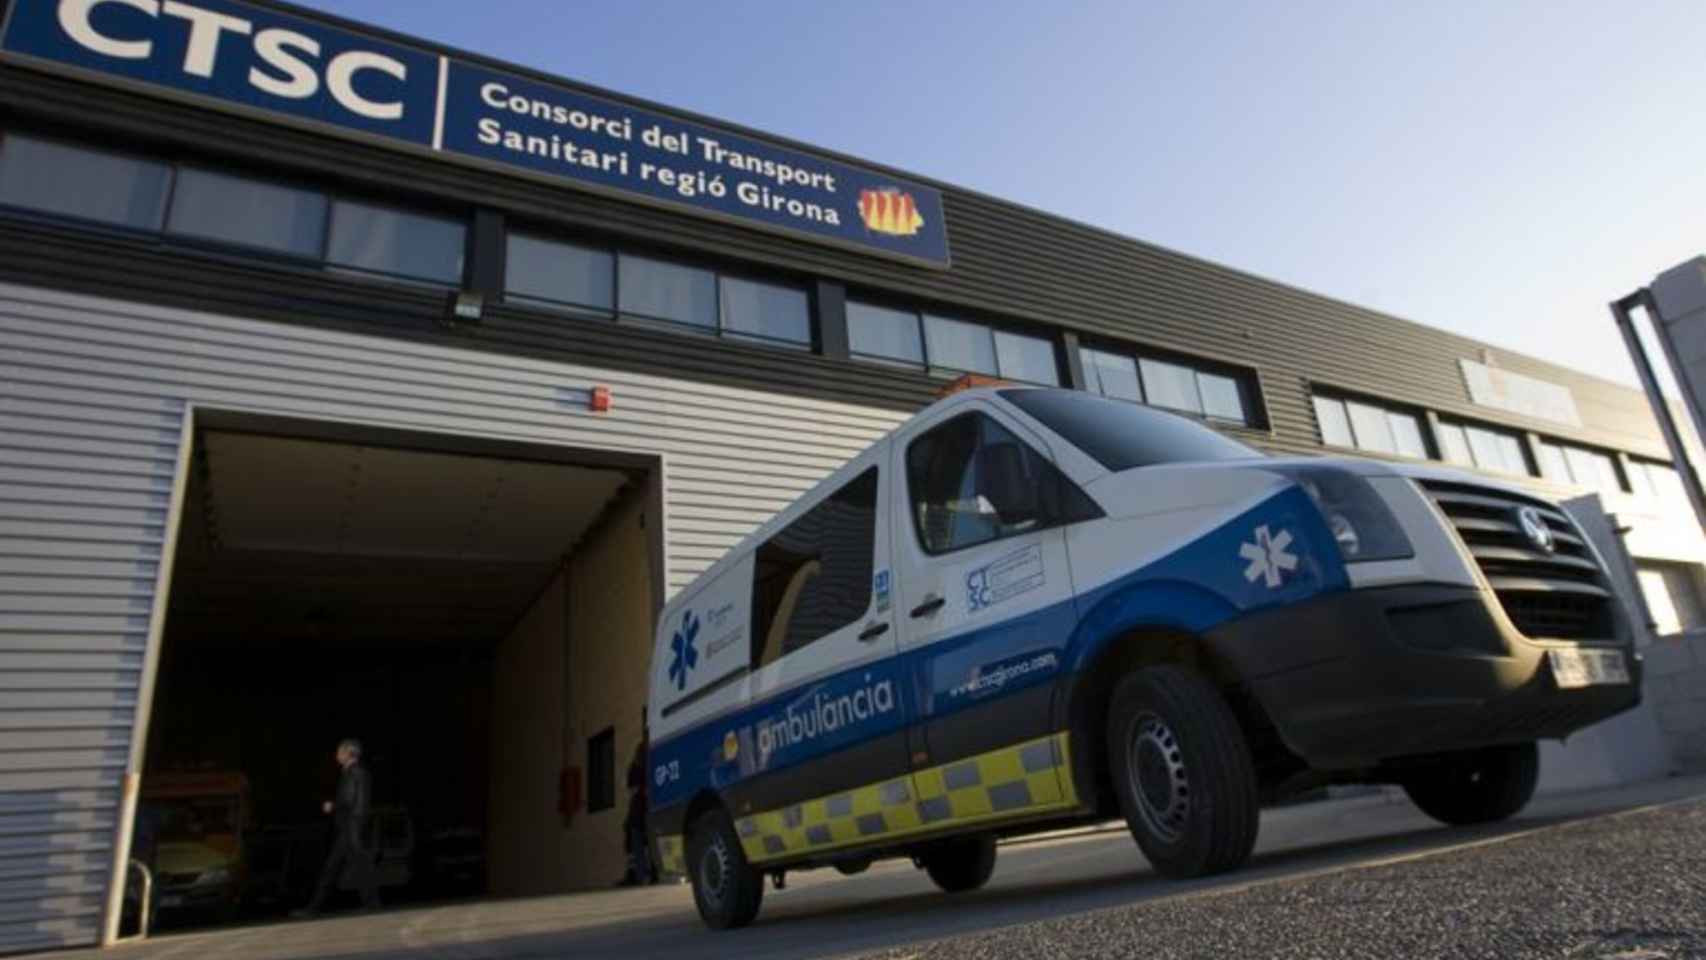 Imagen de una ambulancia del Consorci de Transport Sanitari Regió Girona (CTSC)